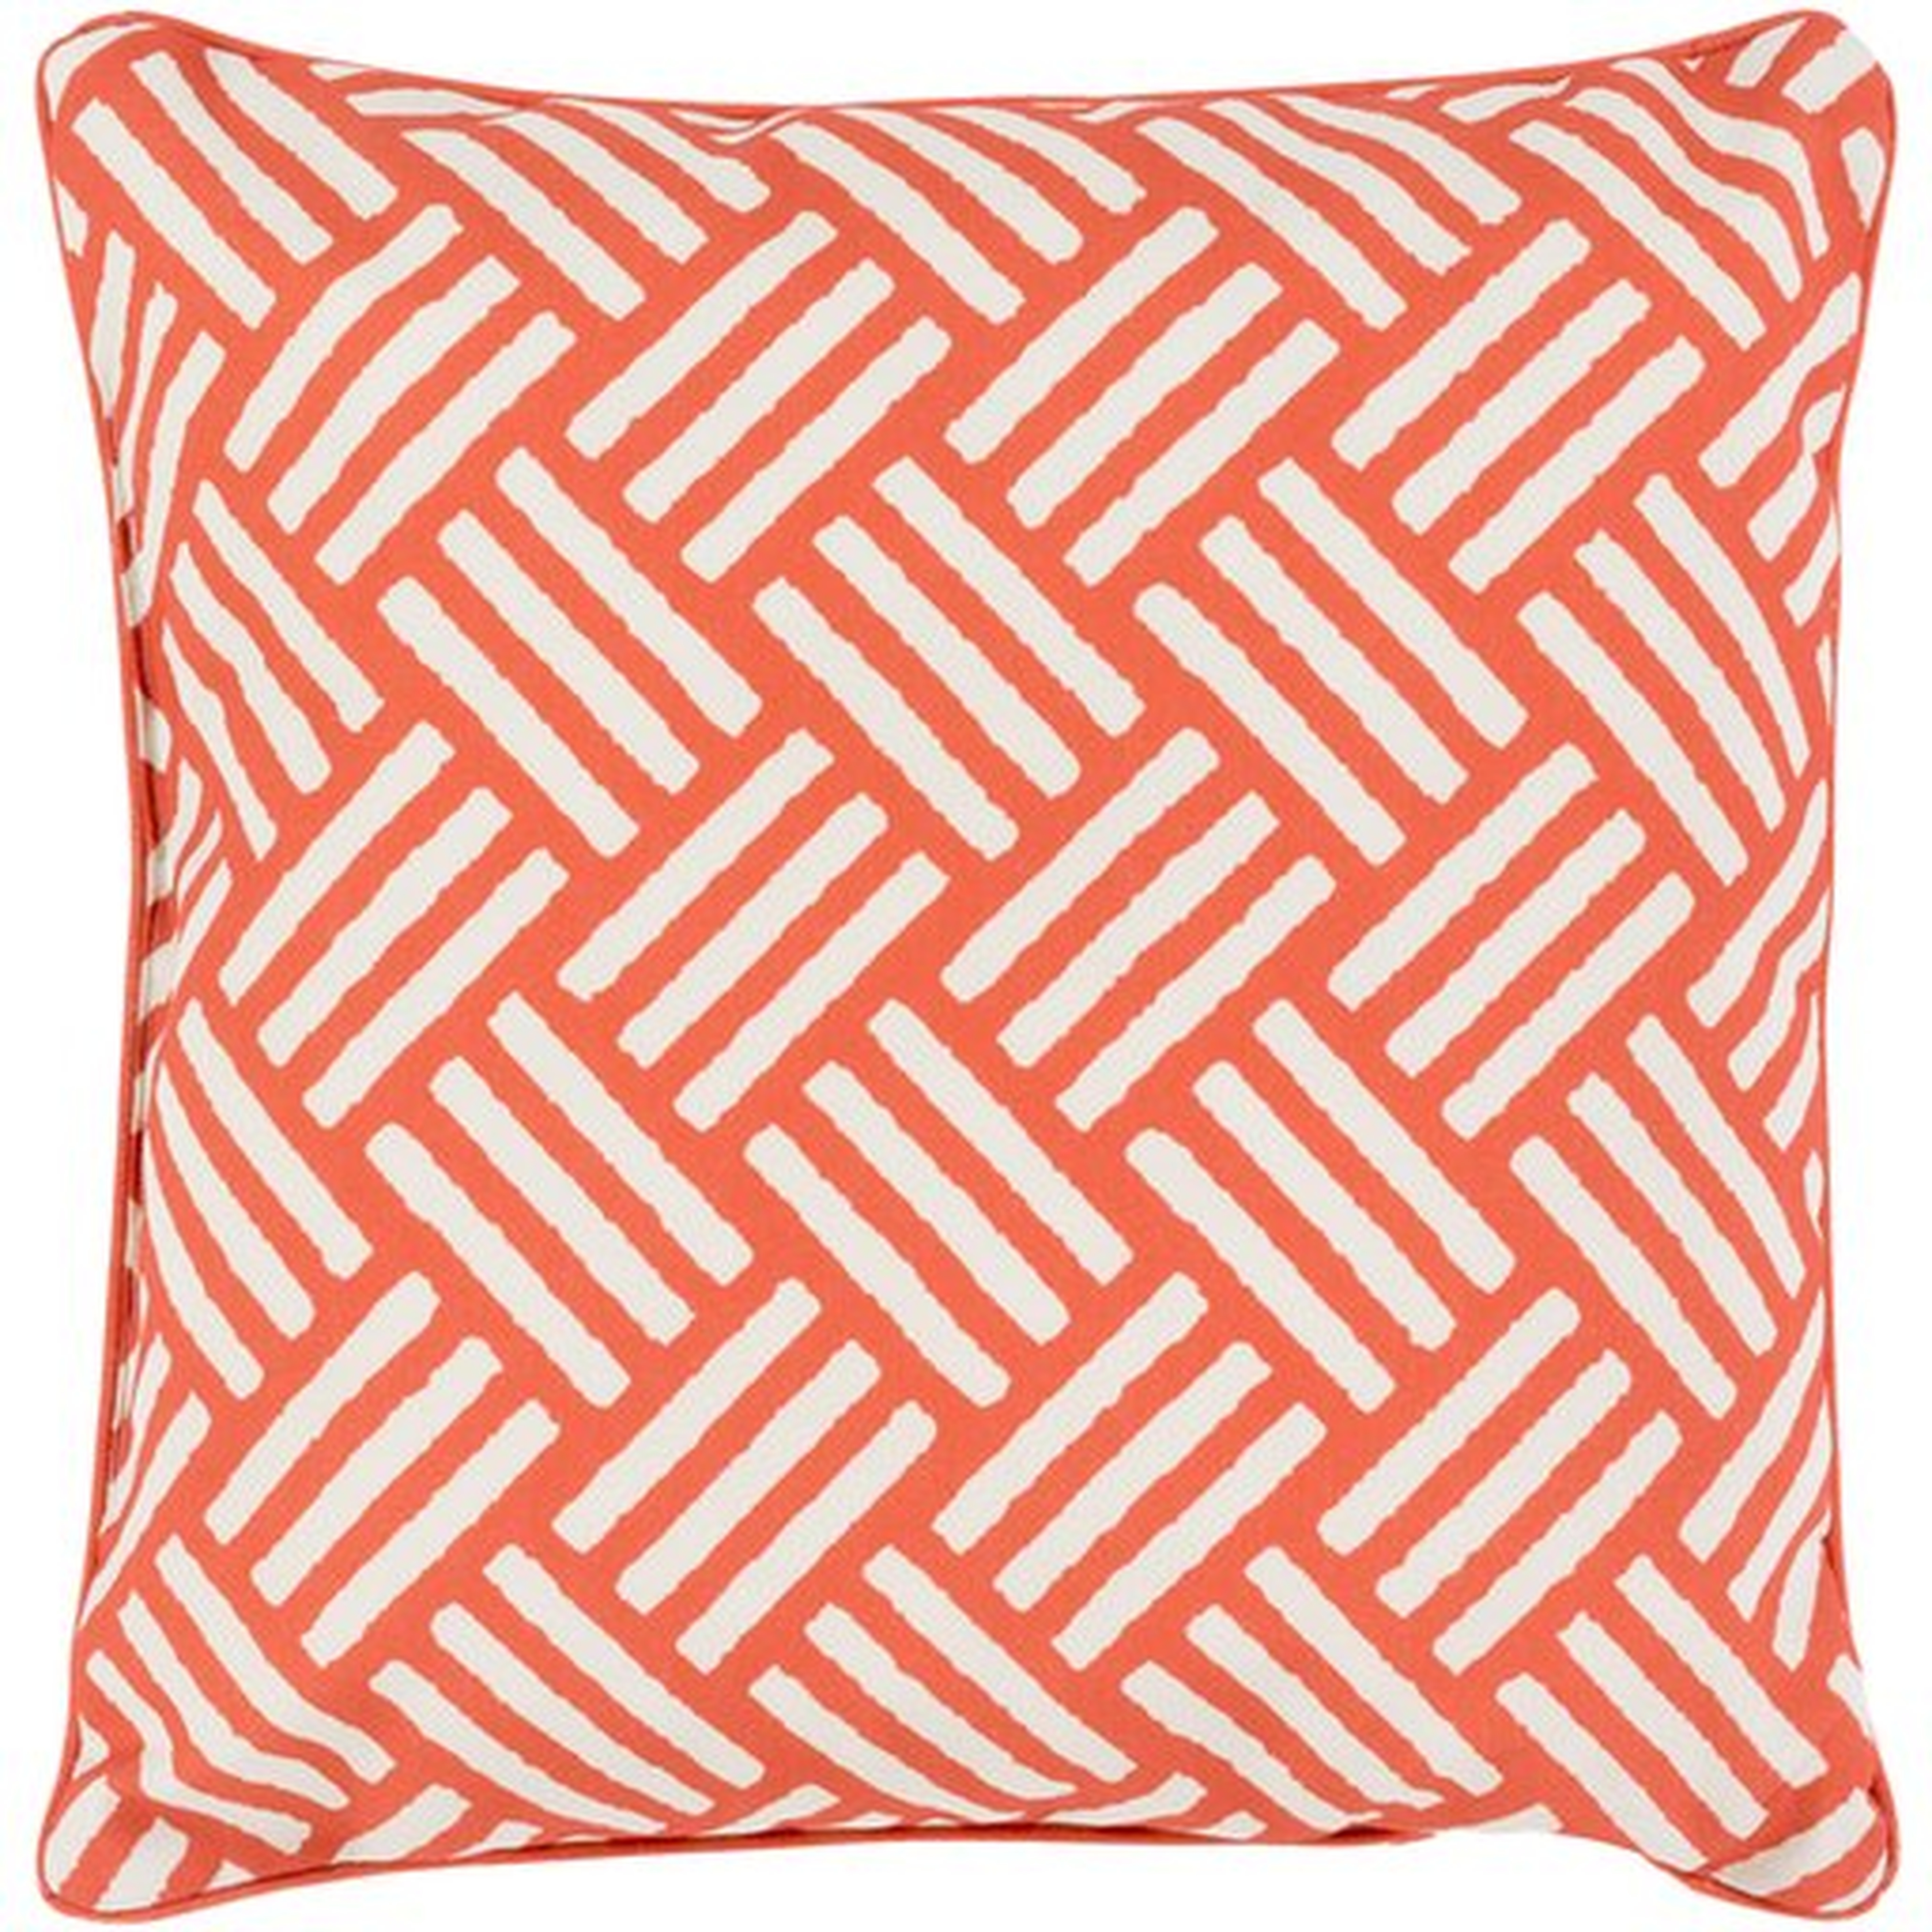 Basketweave 16x16 Pillow - Surya